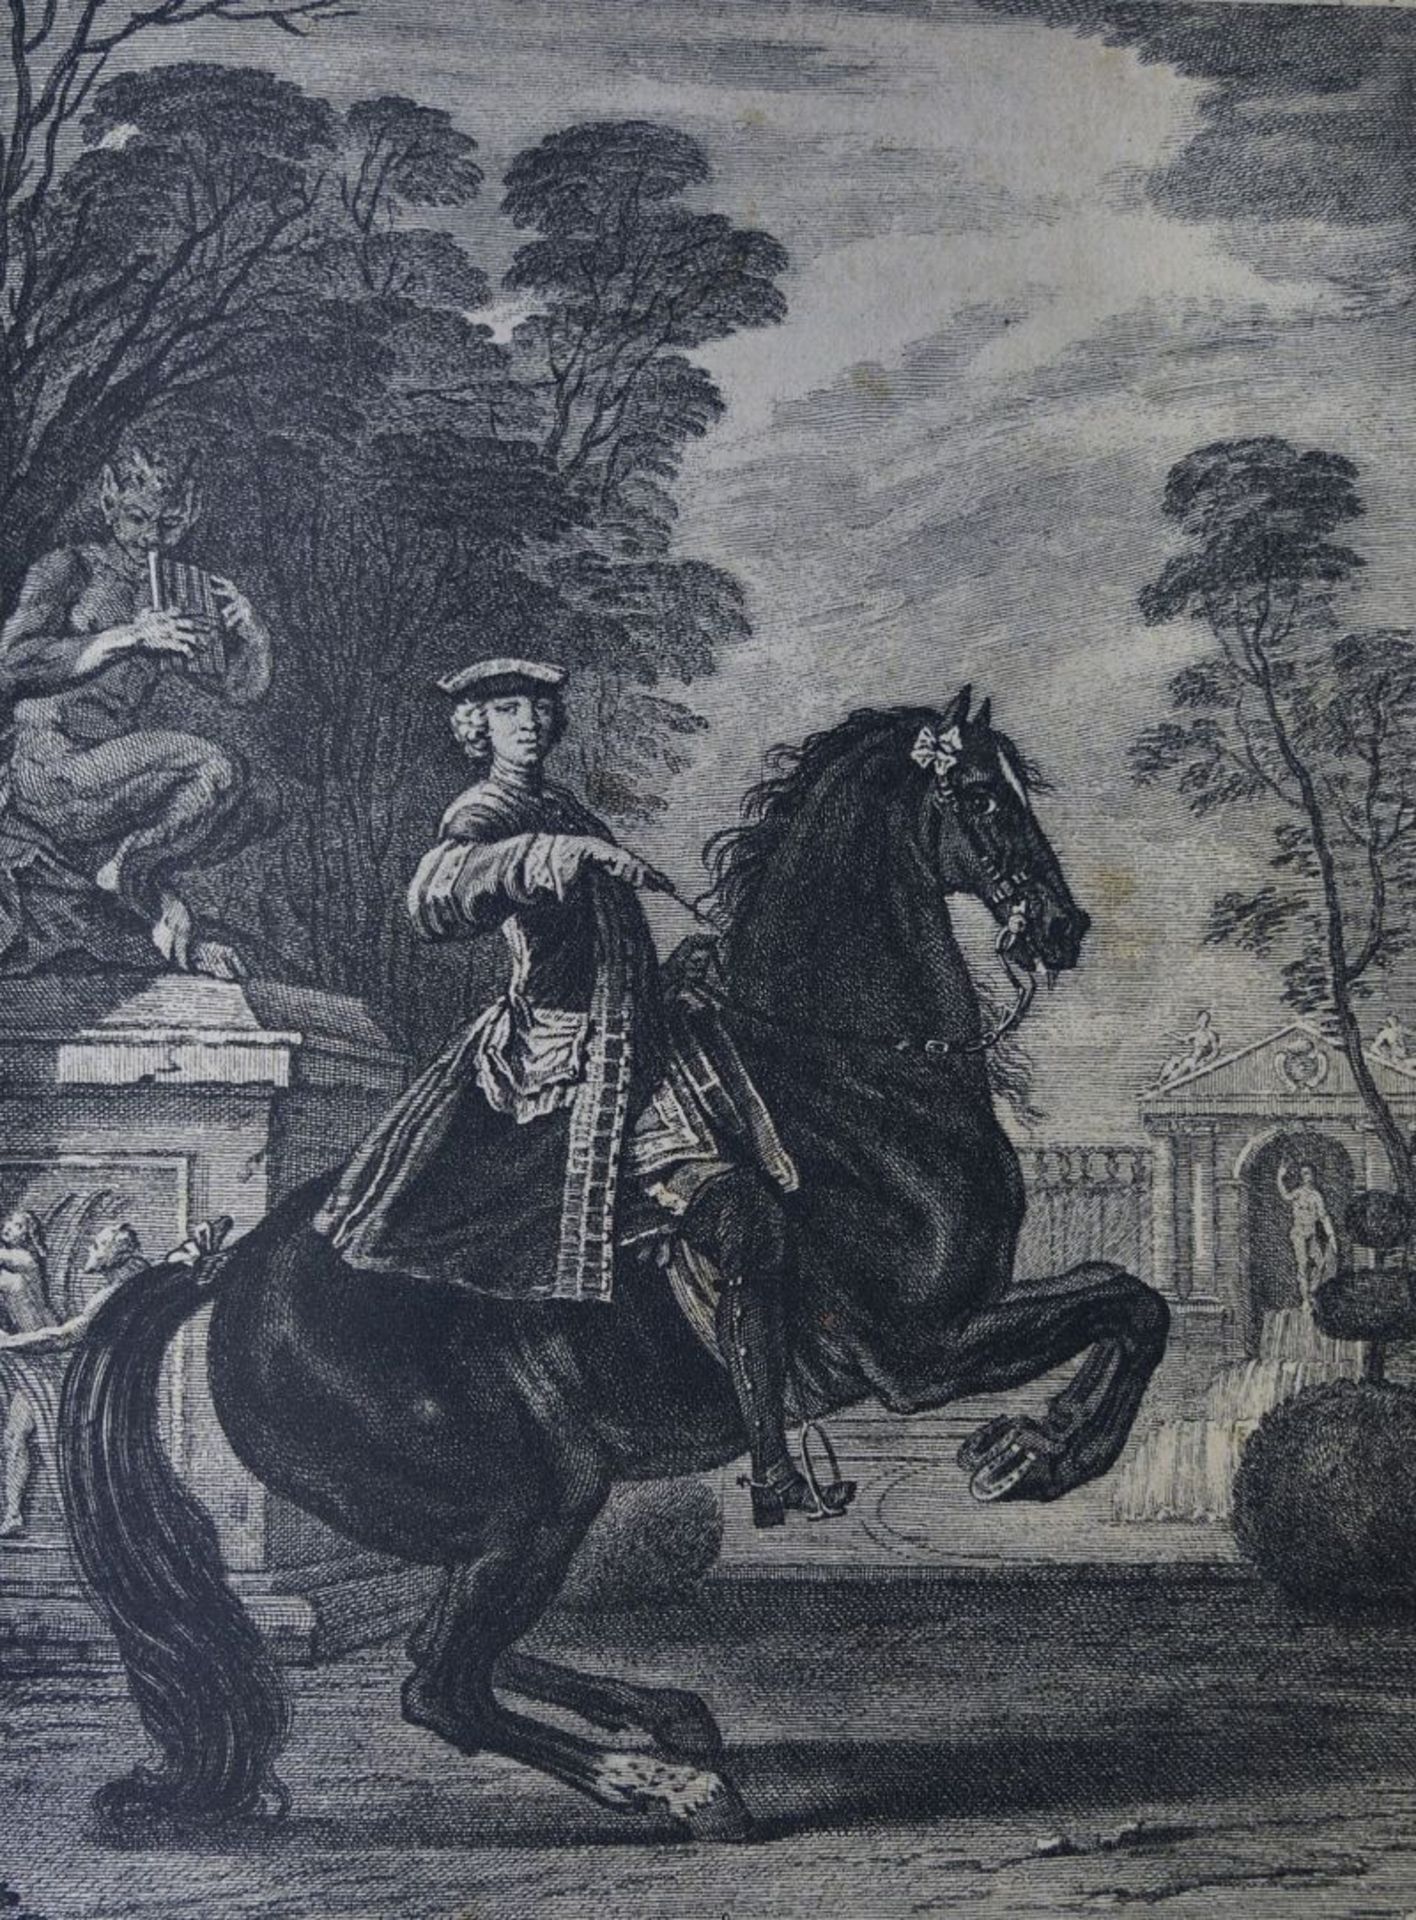 Guérinière, F. R. de la: École de Cavalerie (Reprint)